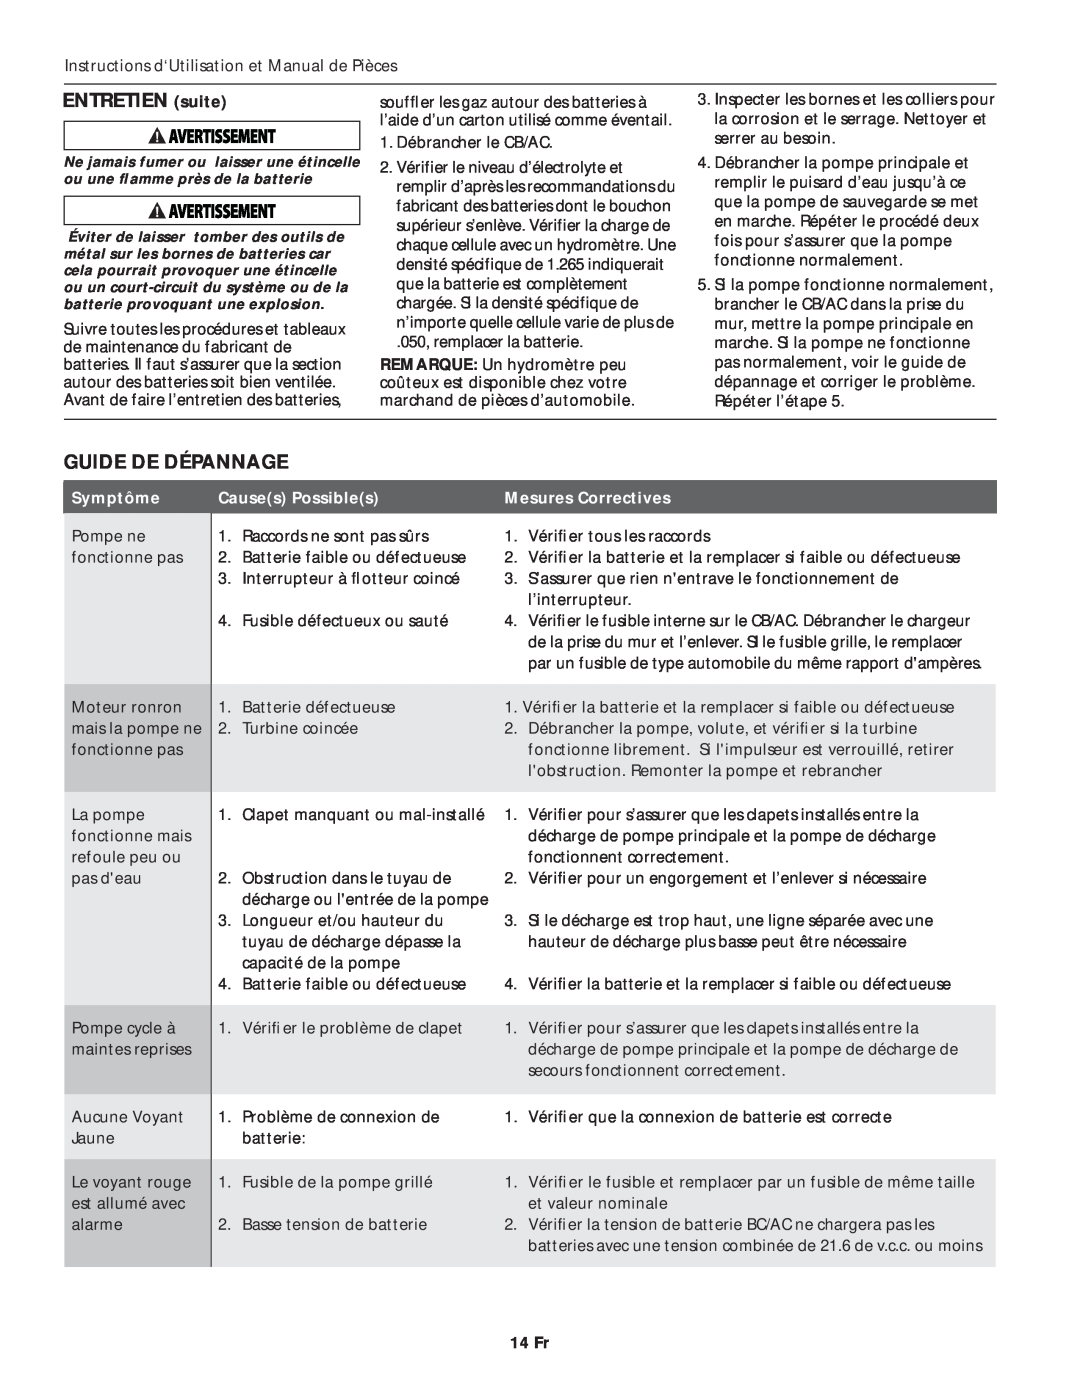 Wayne ESP45 specifications ENTRETIEN suite, Guide De Dépannage, Symptôme, Causes Possibles, Mesures Correctives, 14 Fr 